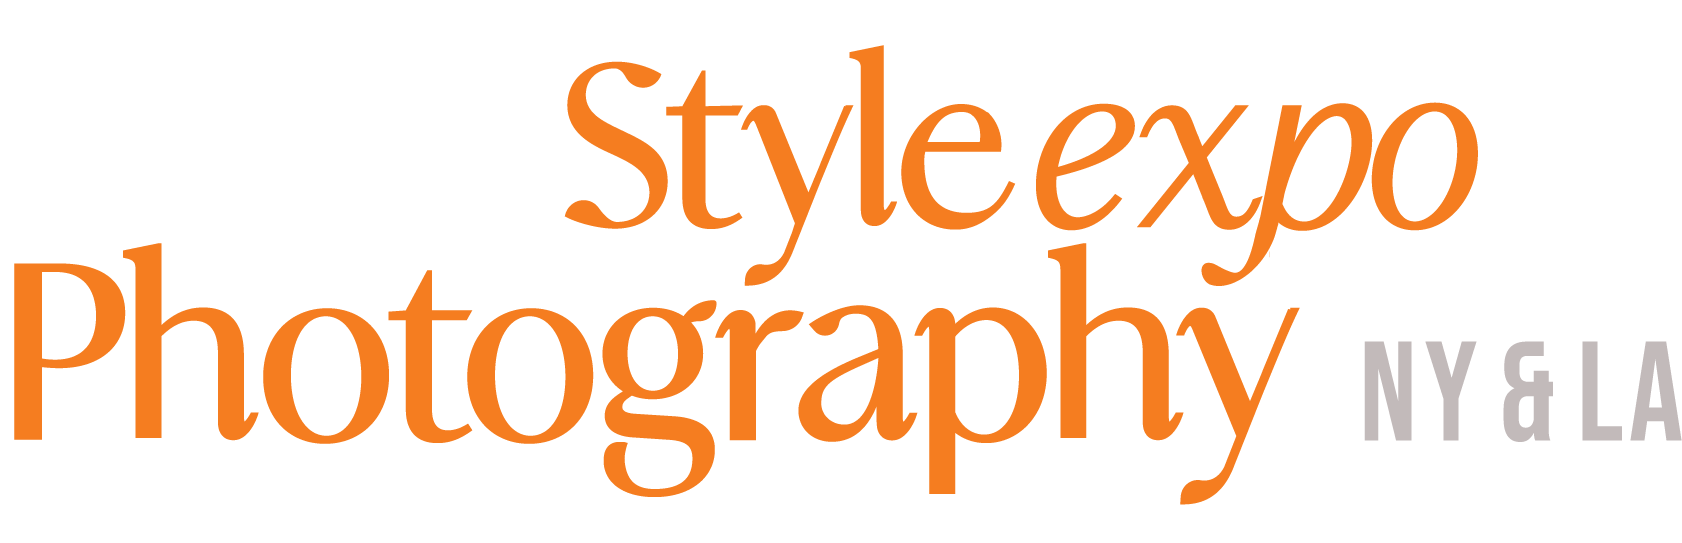  StyleExpo Photography 